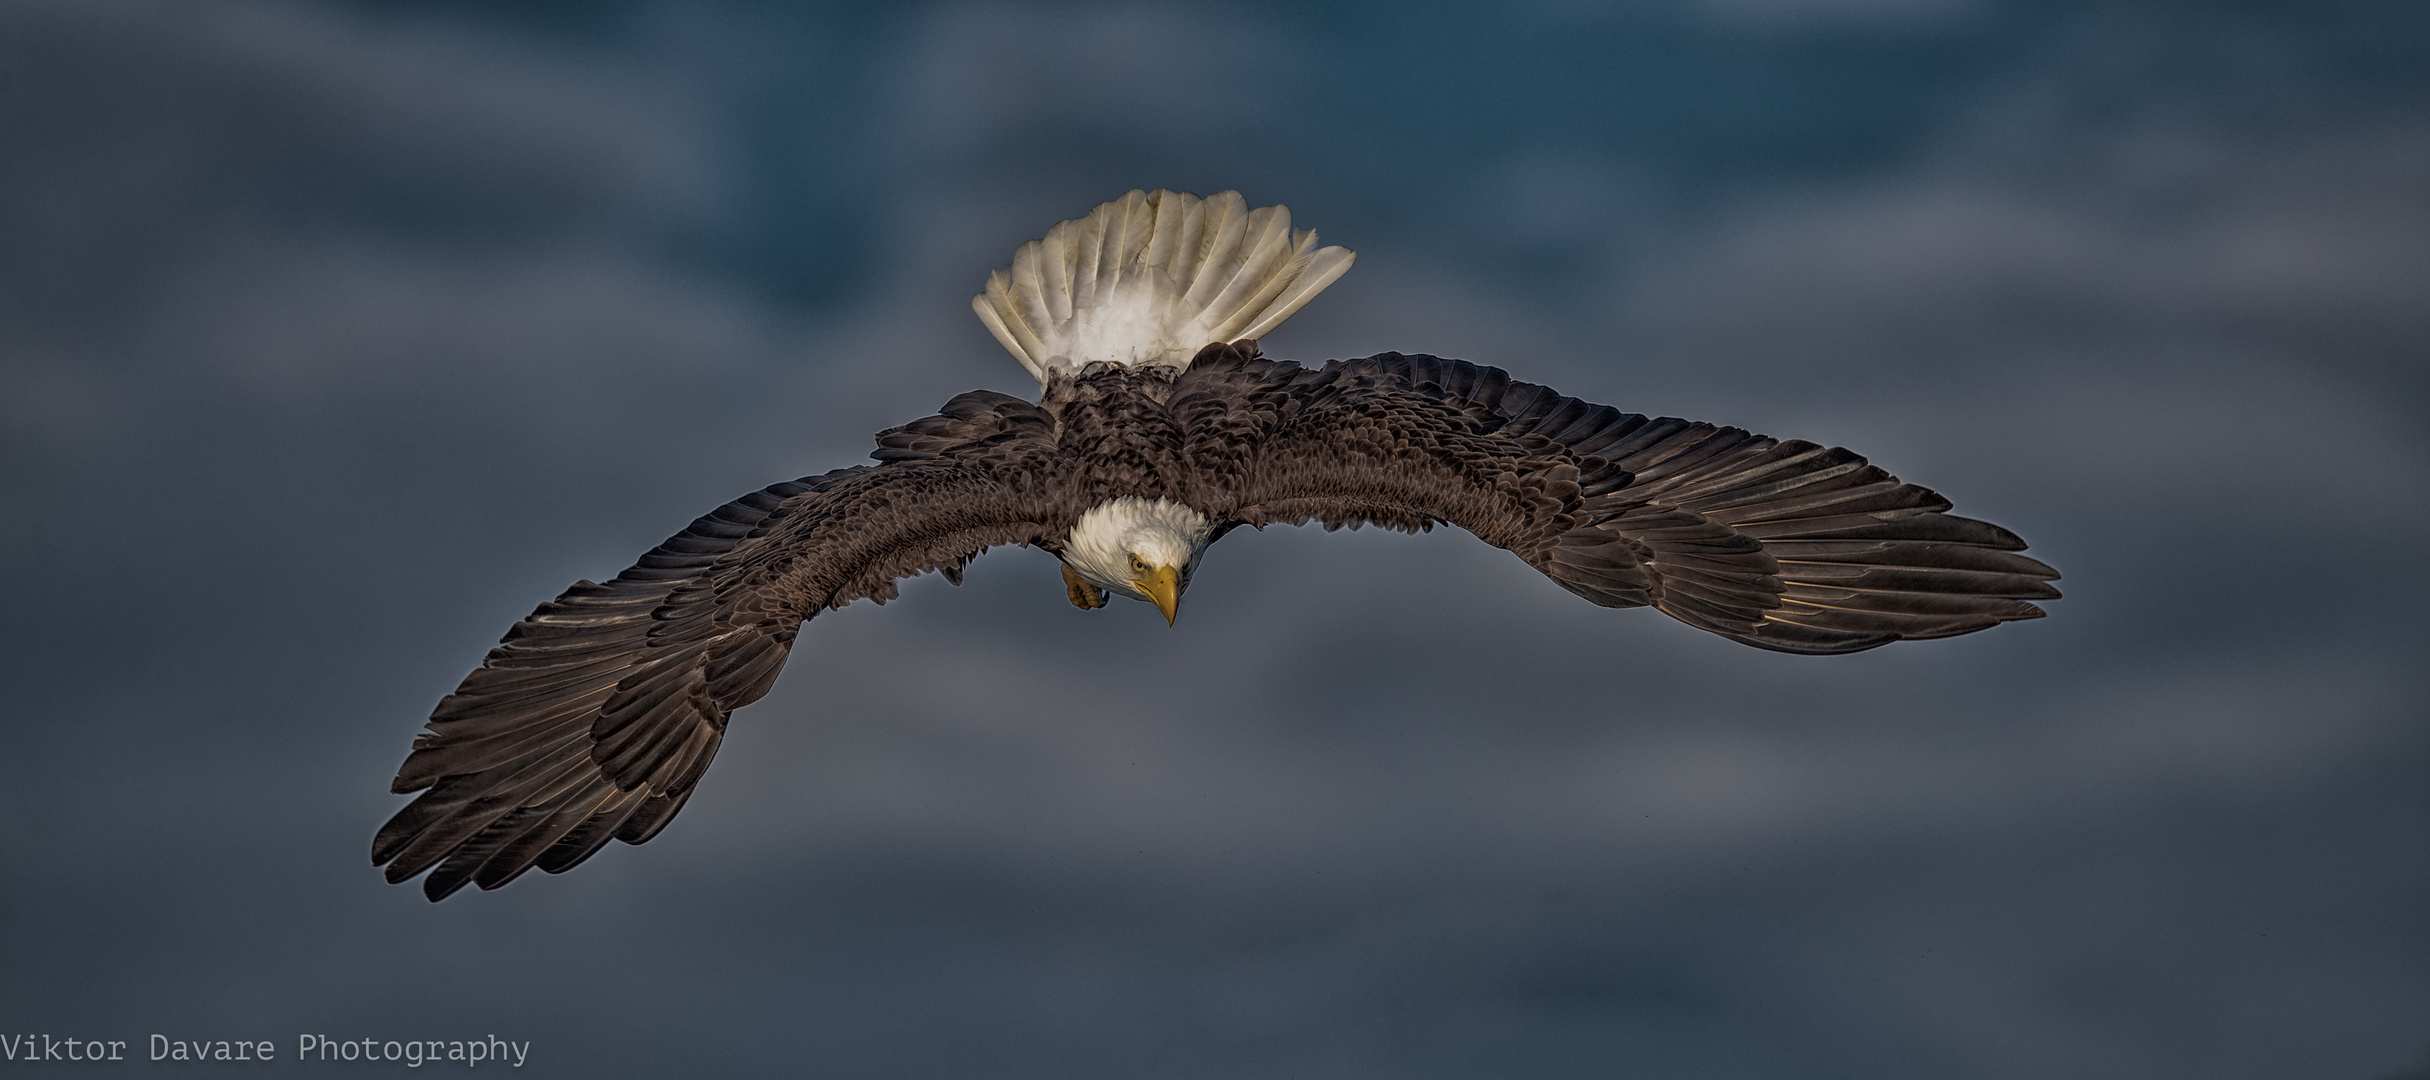 Der Weiss Kopf See Adler im Sturzflug